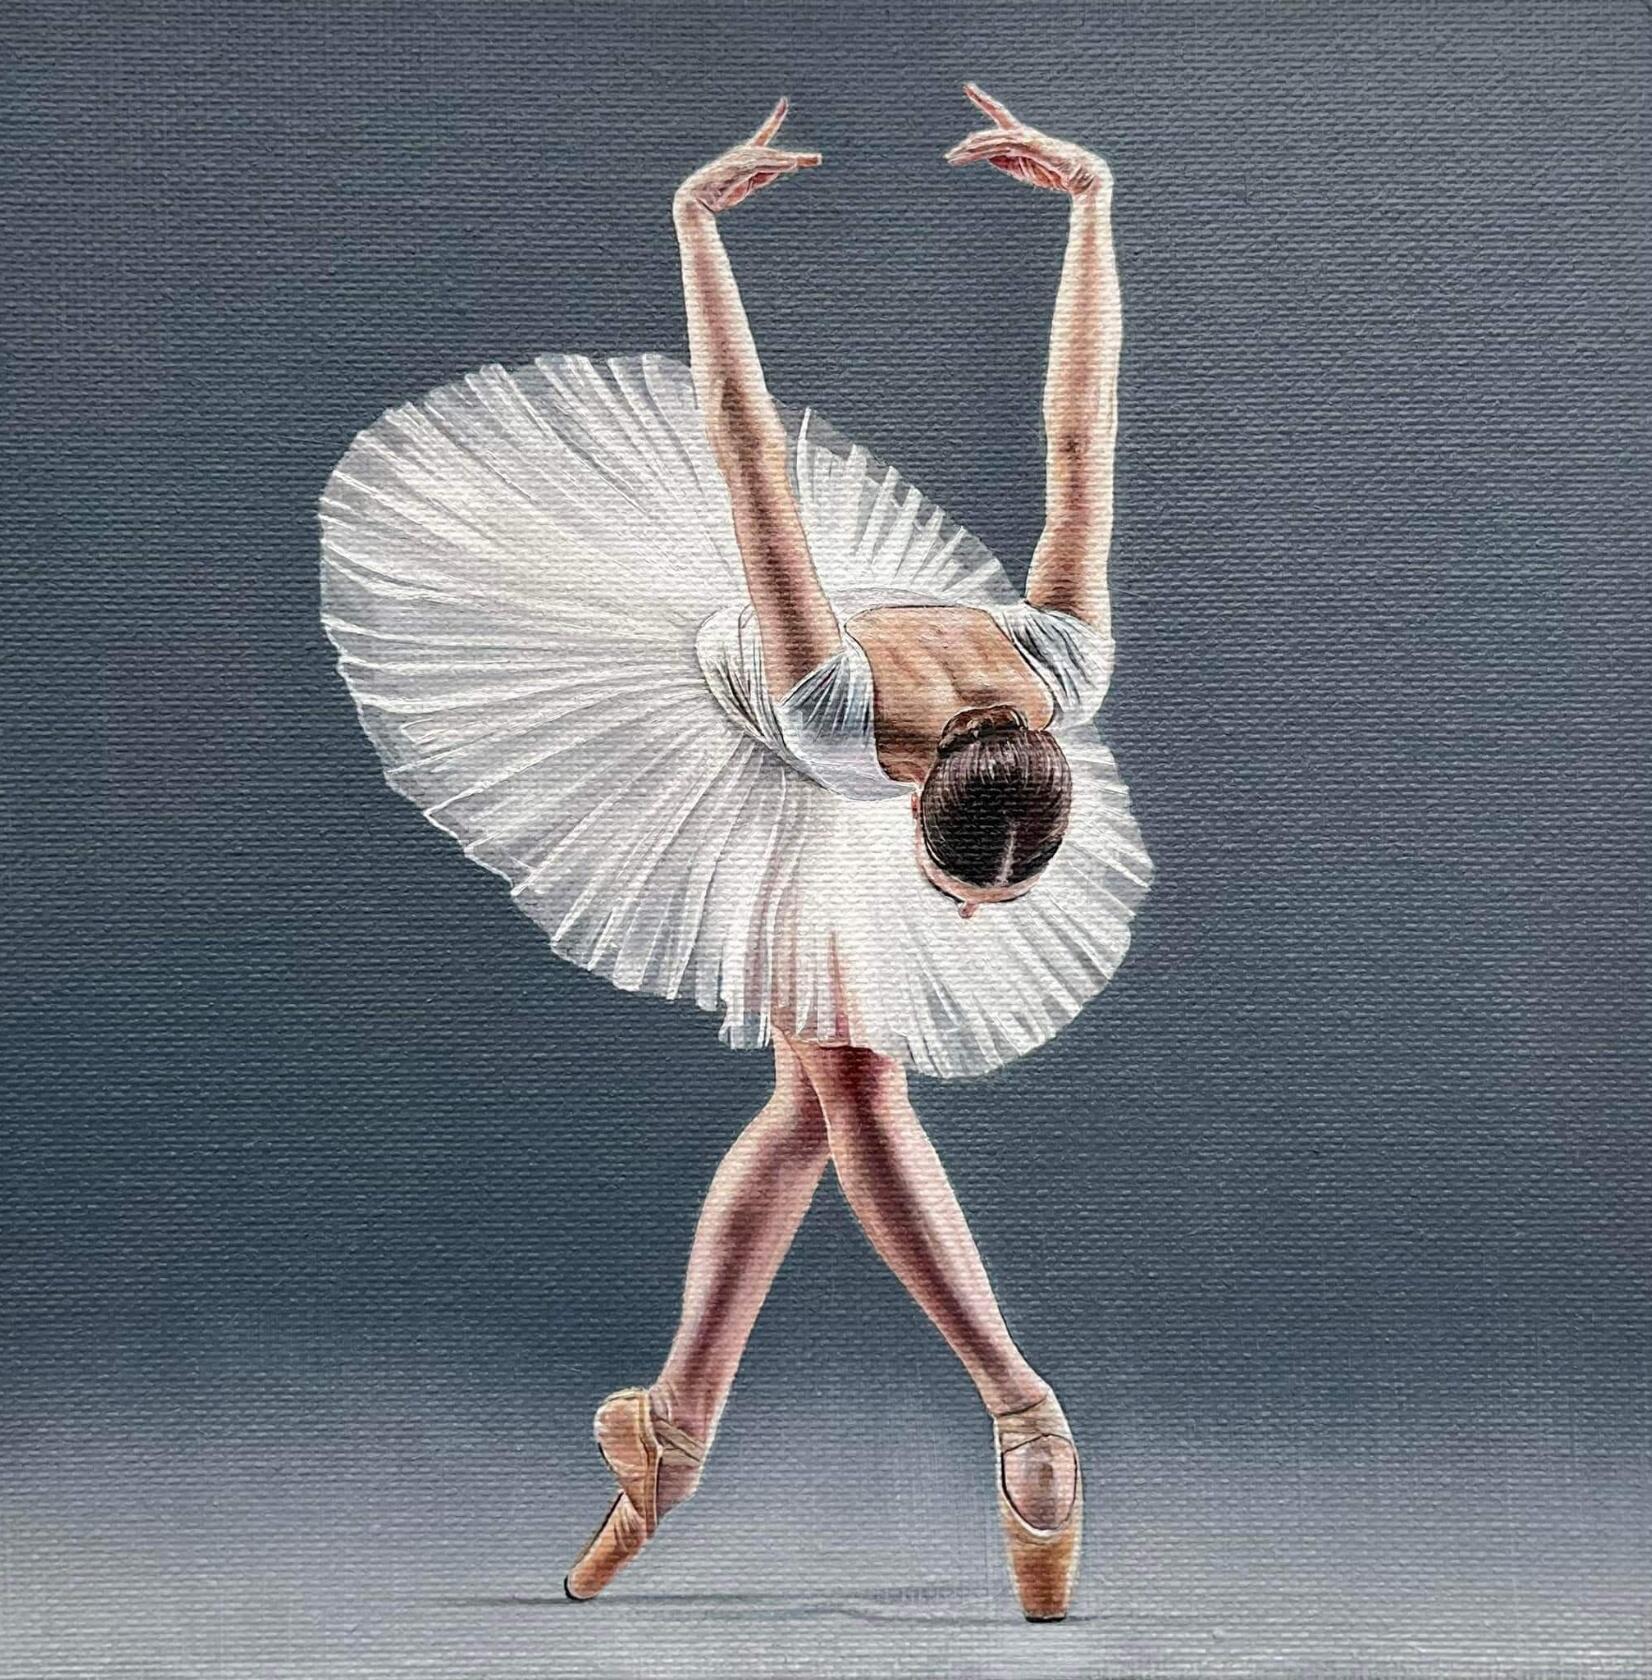 всемирный день балета 2023 картинки